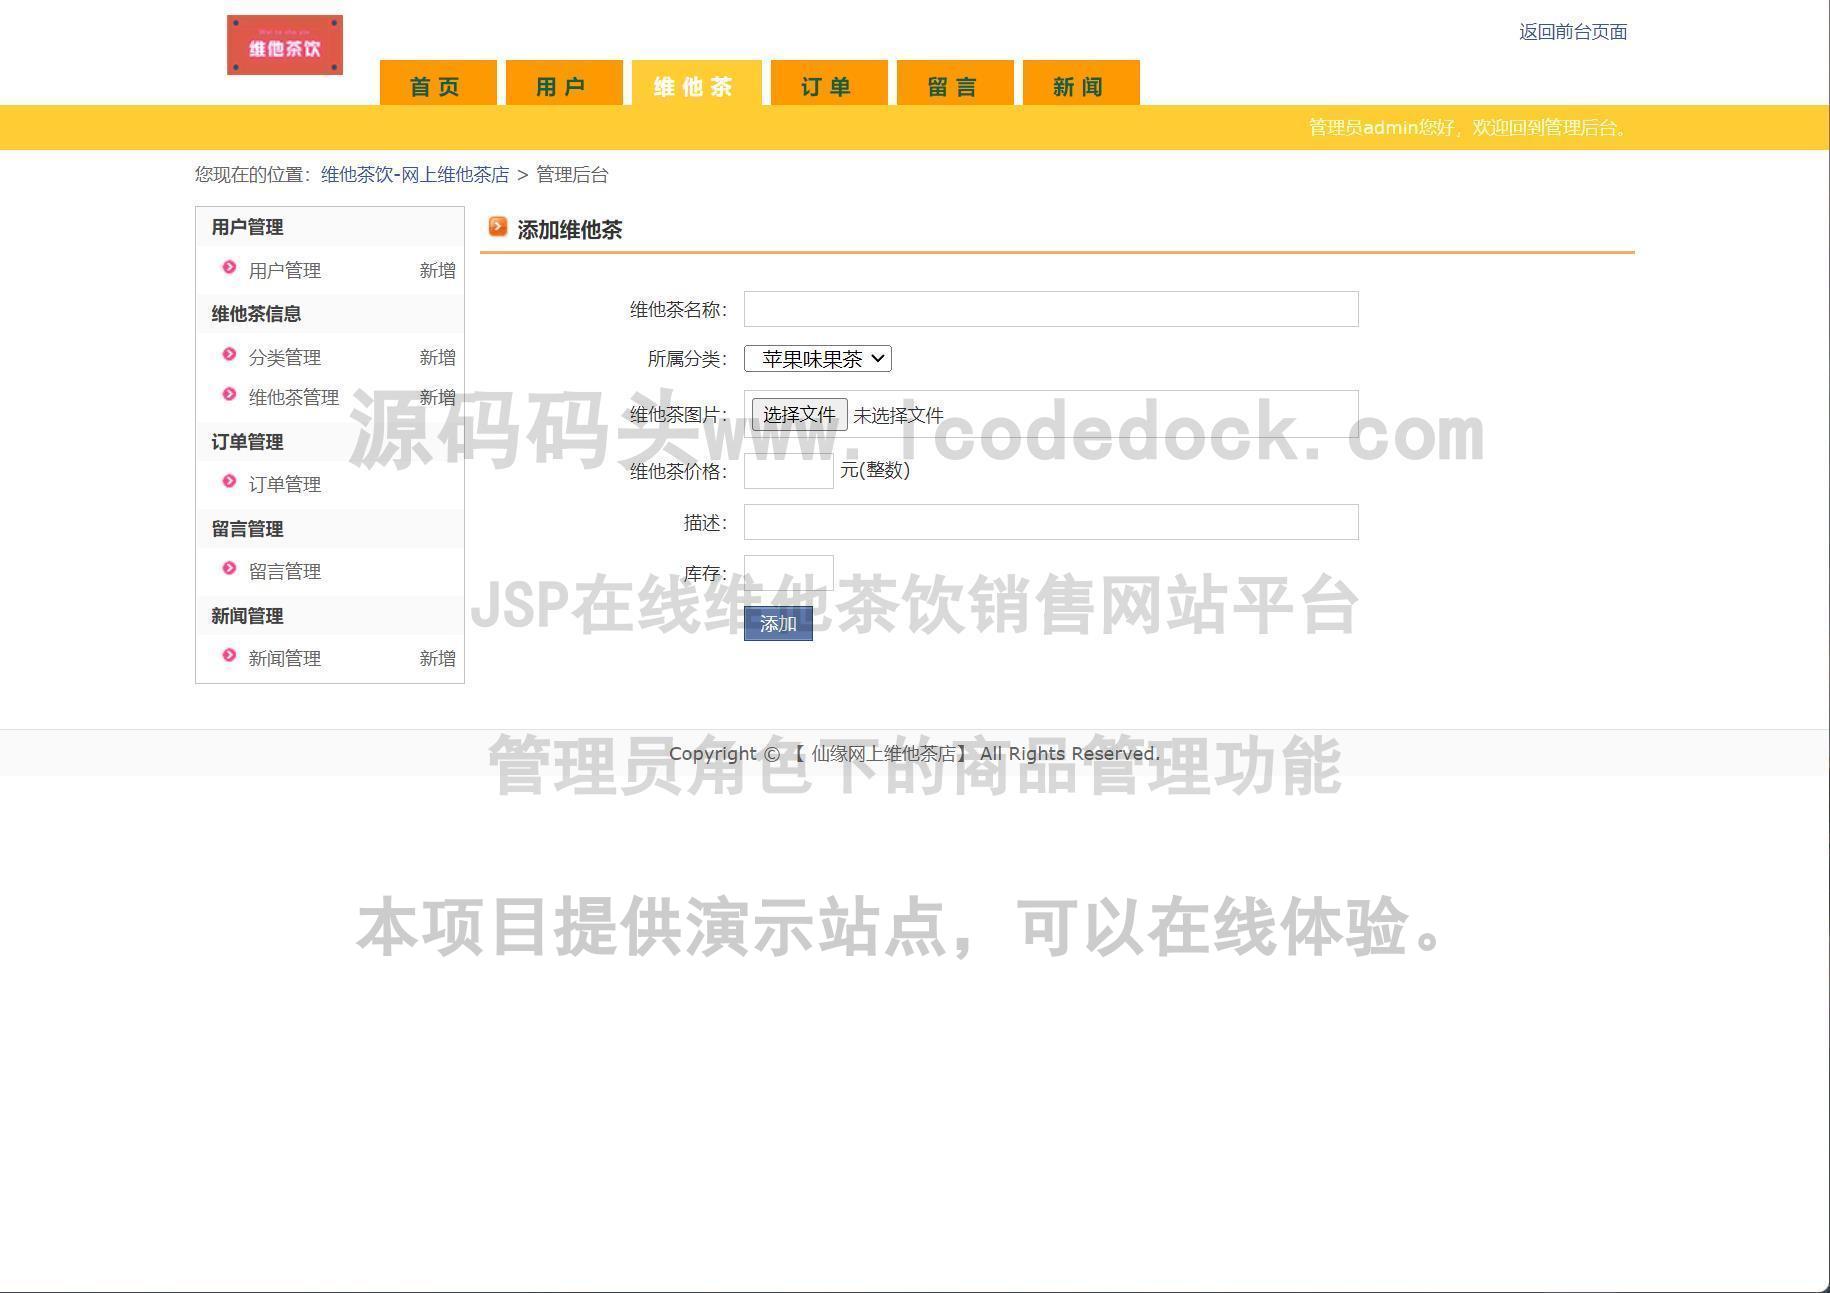 源码码头-JSP在线维他茶饮销售网站平台-管理员角色-商品管理